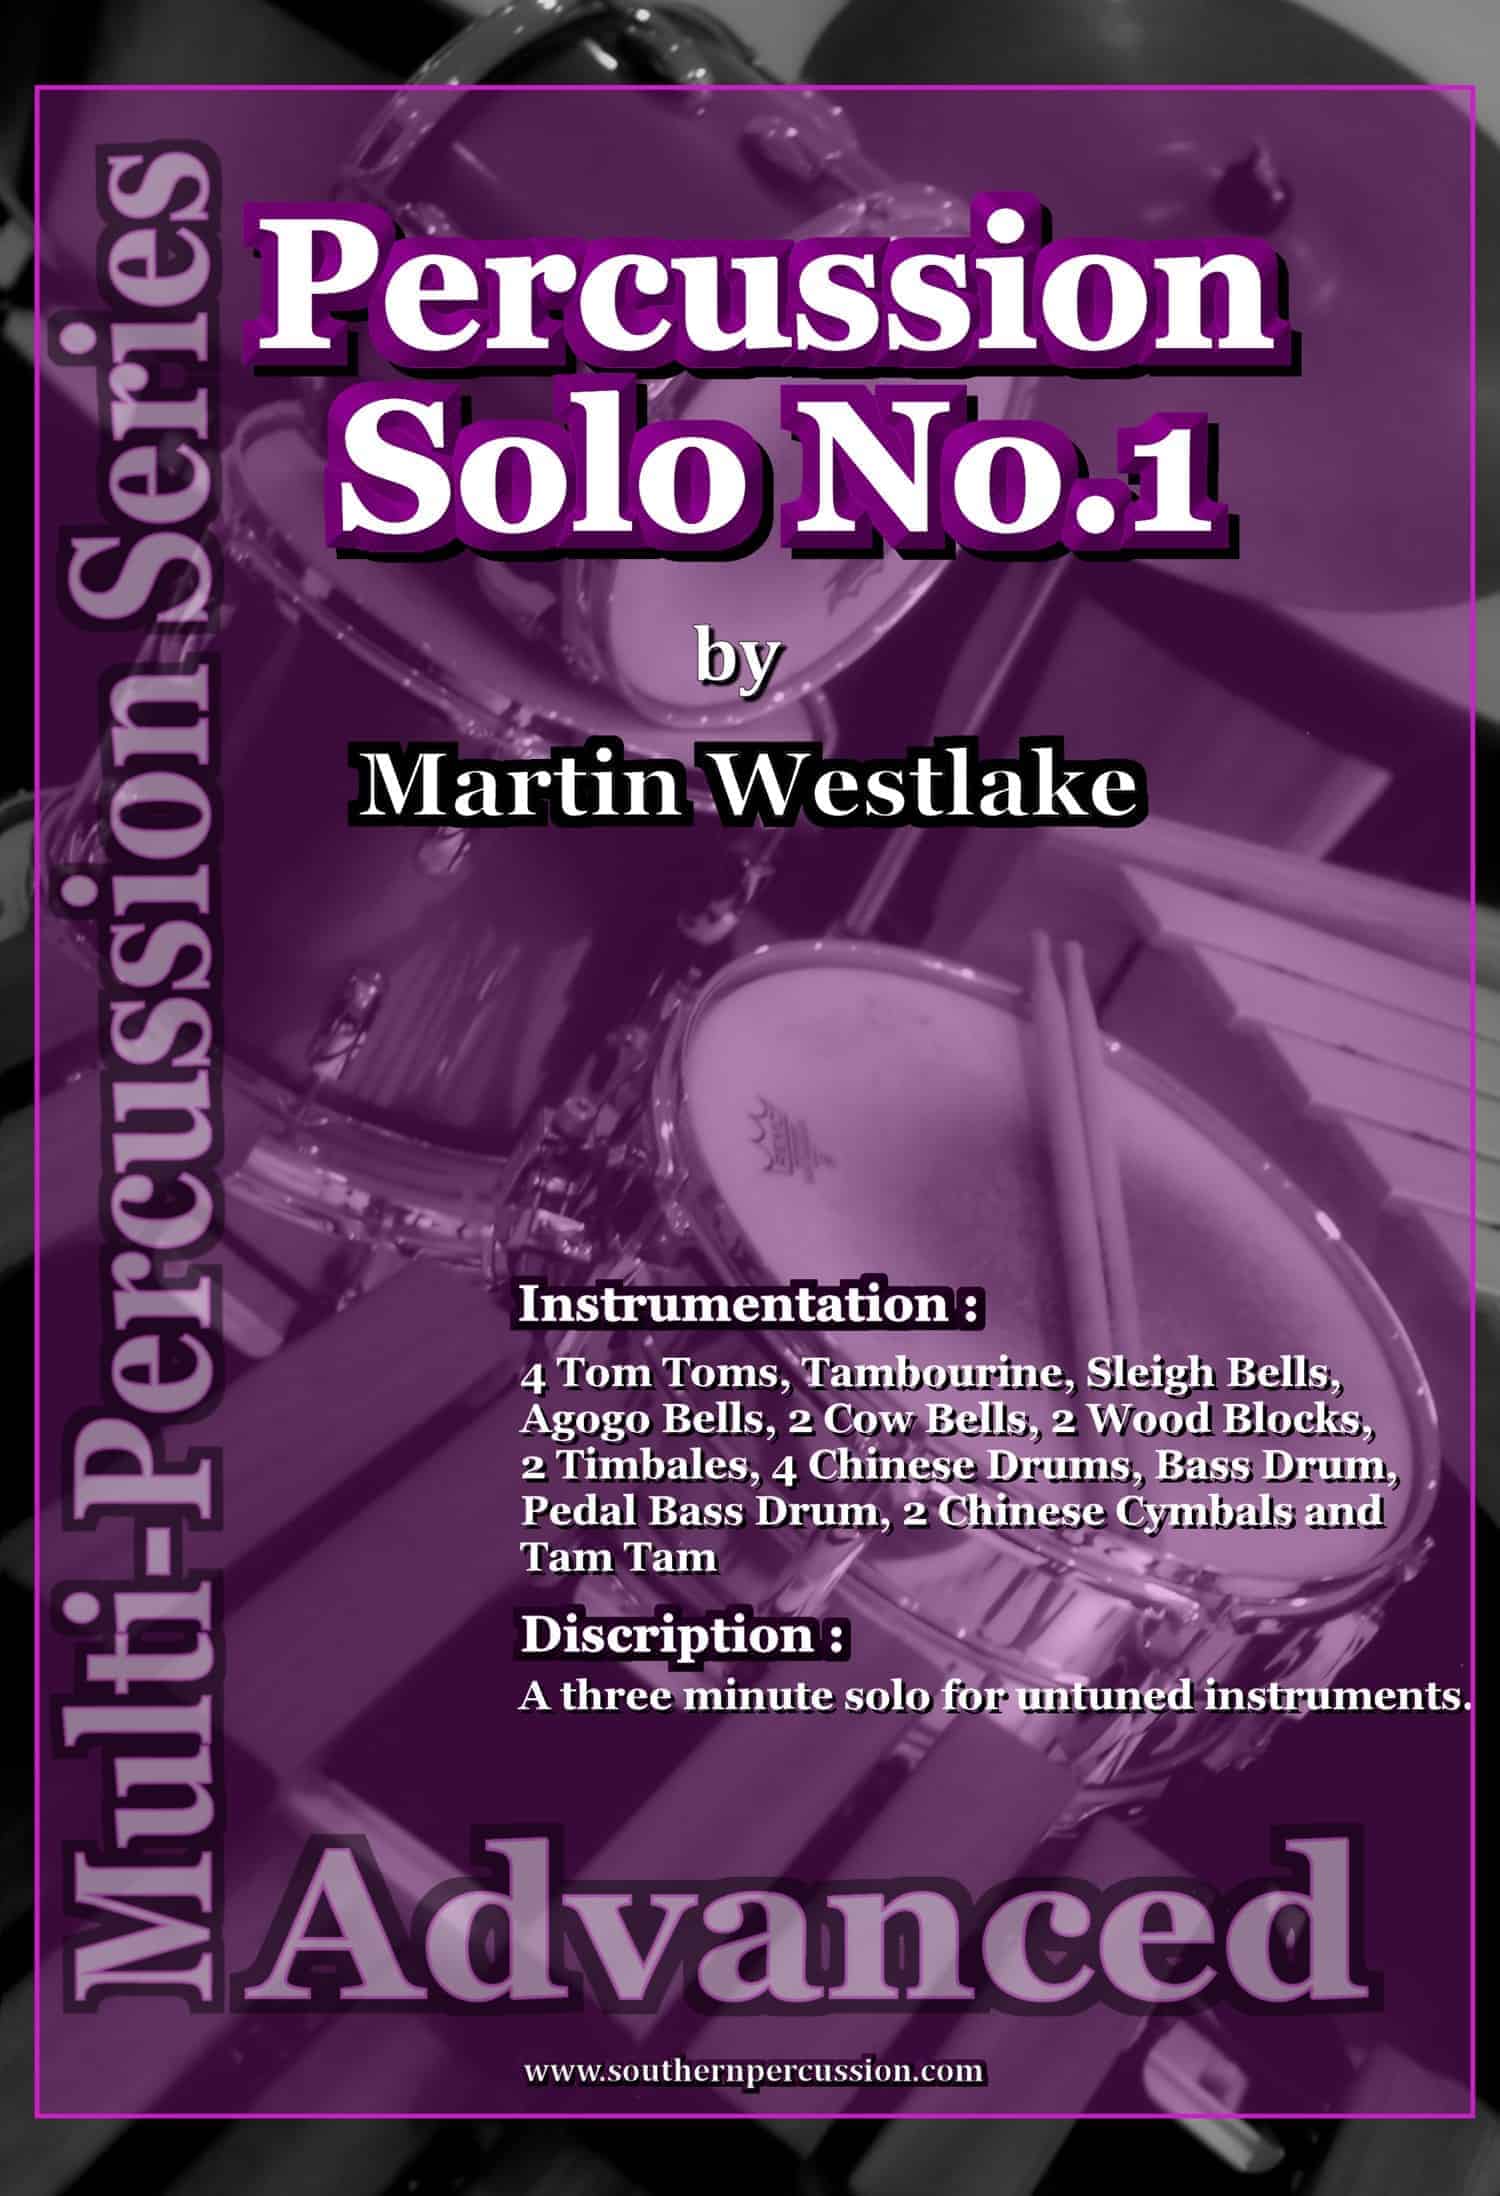 Percussion Solo No. 1